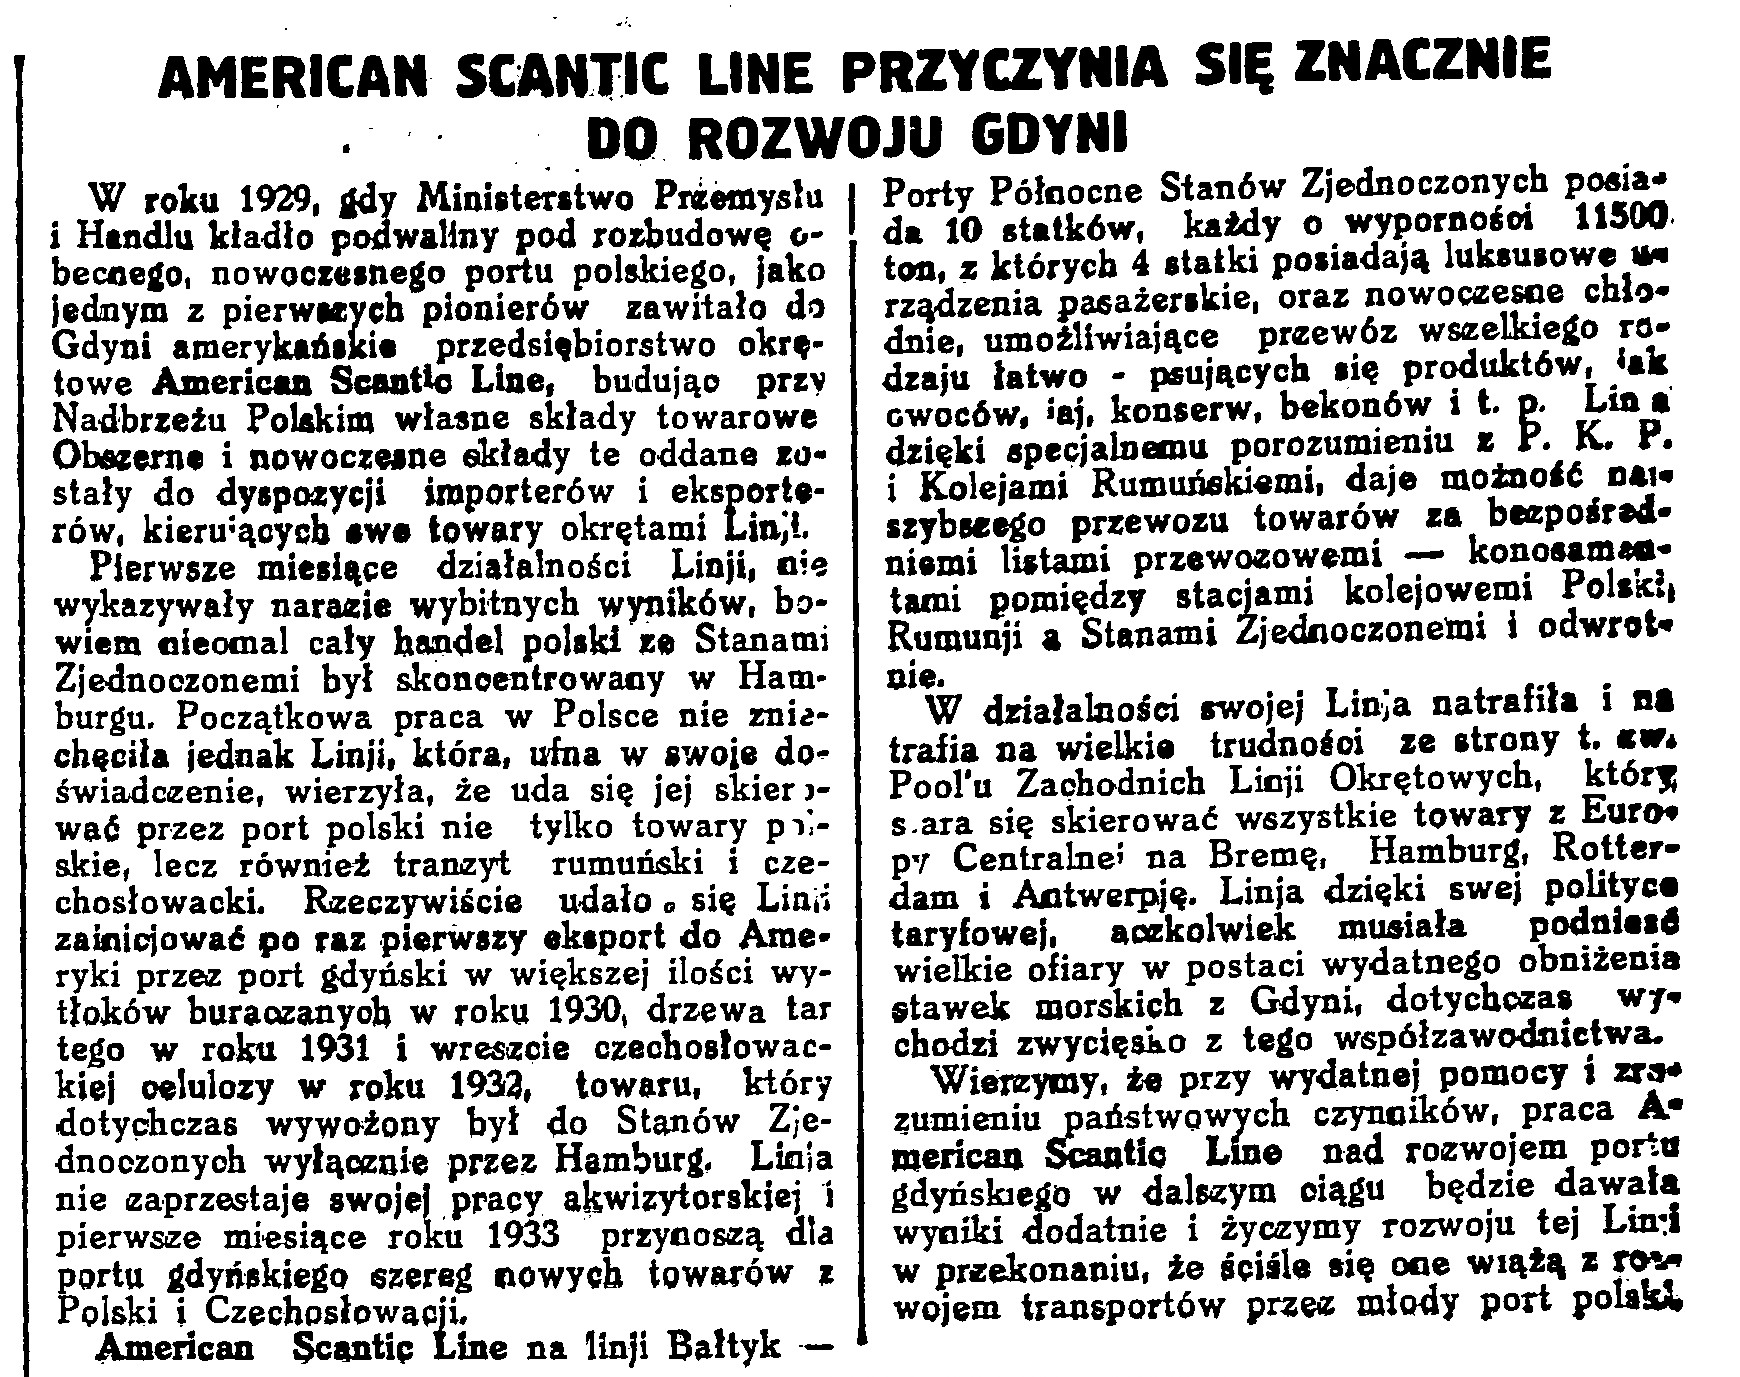 American Scantic Line przyczynia się znacznie do rozwoju Gdyni